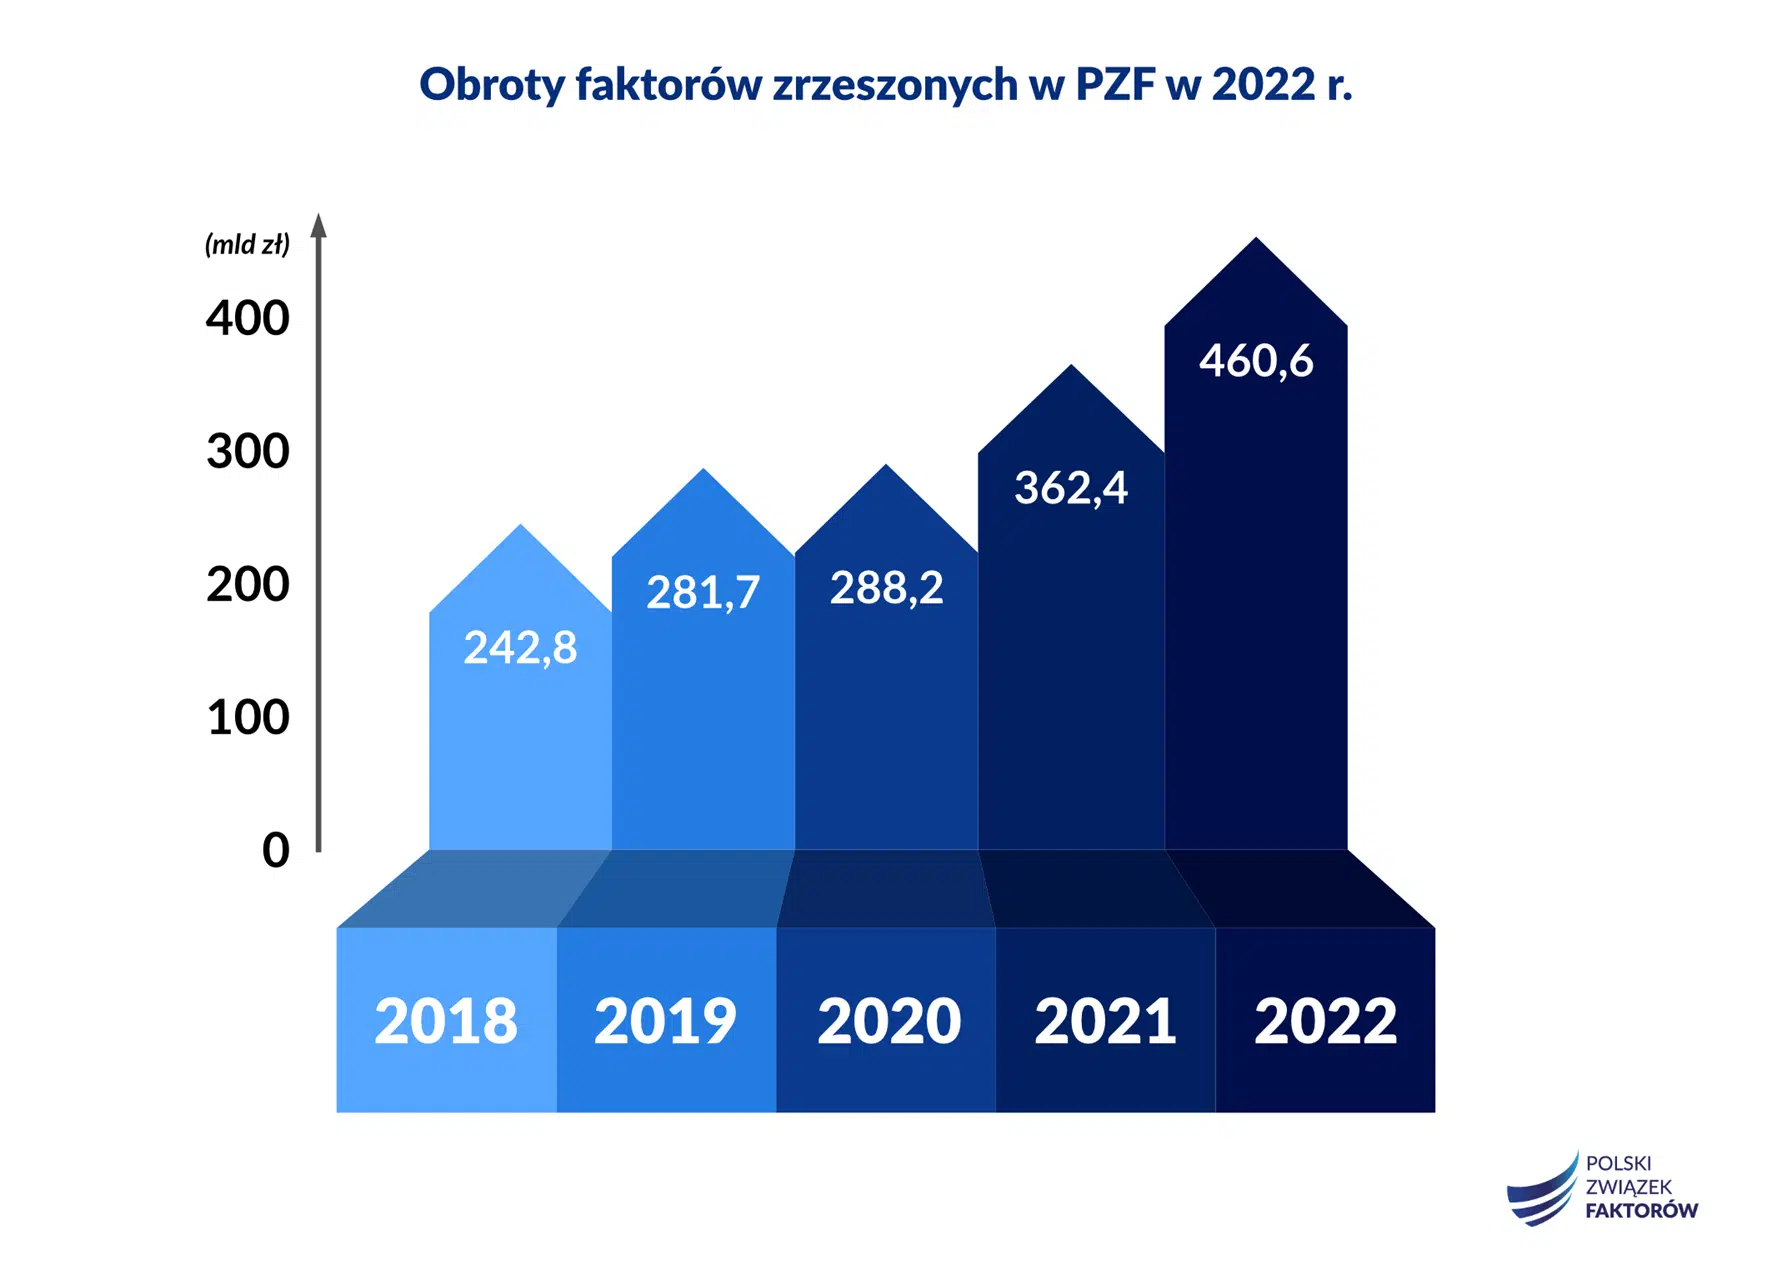 Obroty faktorów zrzeszonych w Polskim Związku Faktorów w 2022